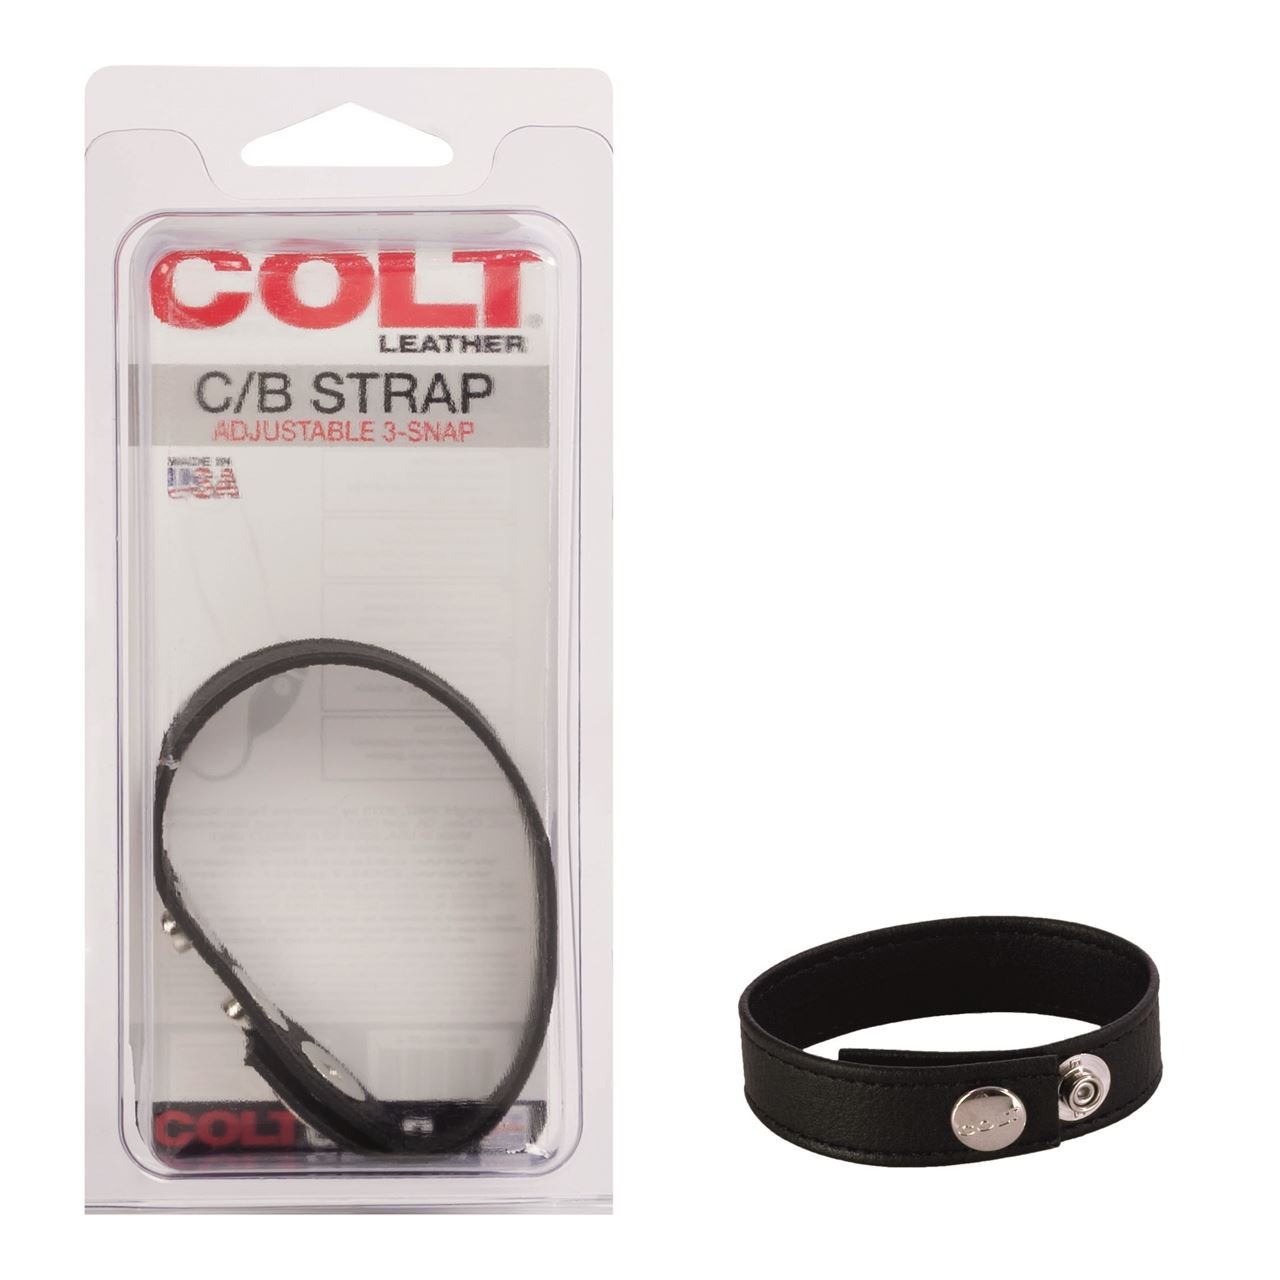 0014035_colt-adjustable-3-snap-leather-strap_cfn3hbdbhedfmb7v.jpeg